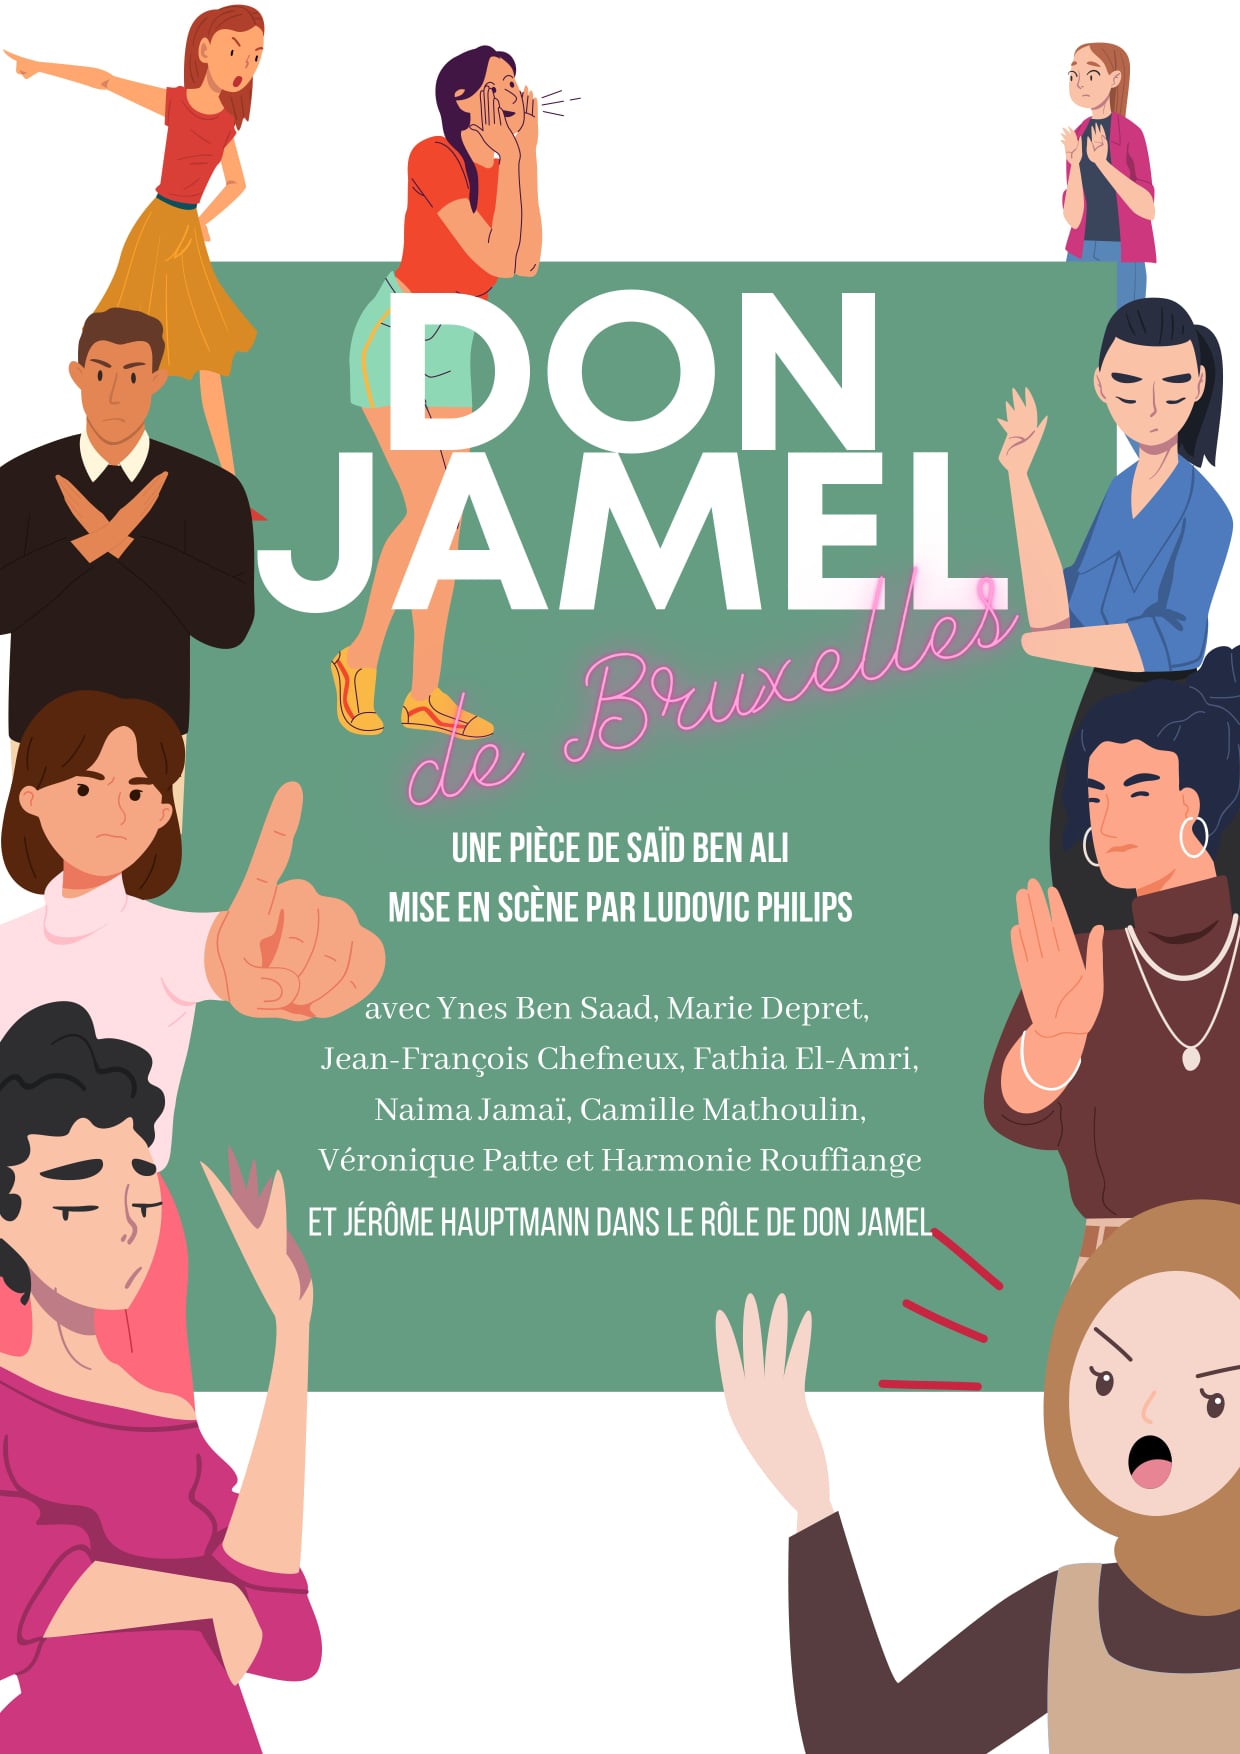 Don Jamel. Le Don Juan du XXIe, à la sauce bruxelloise. Pièce de théâtre.